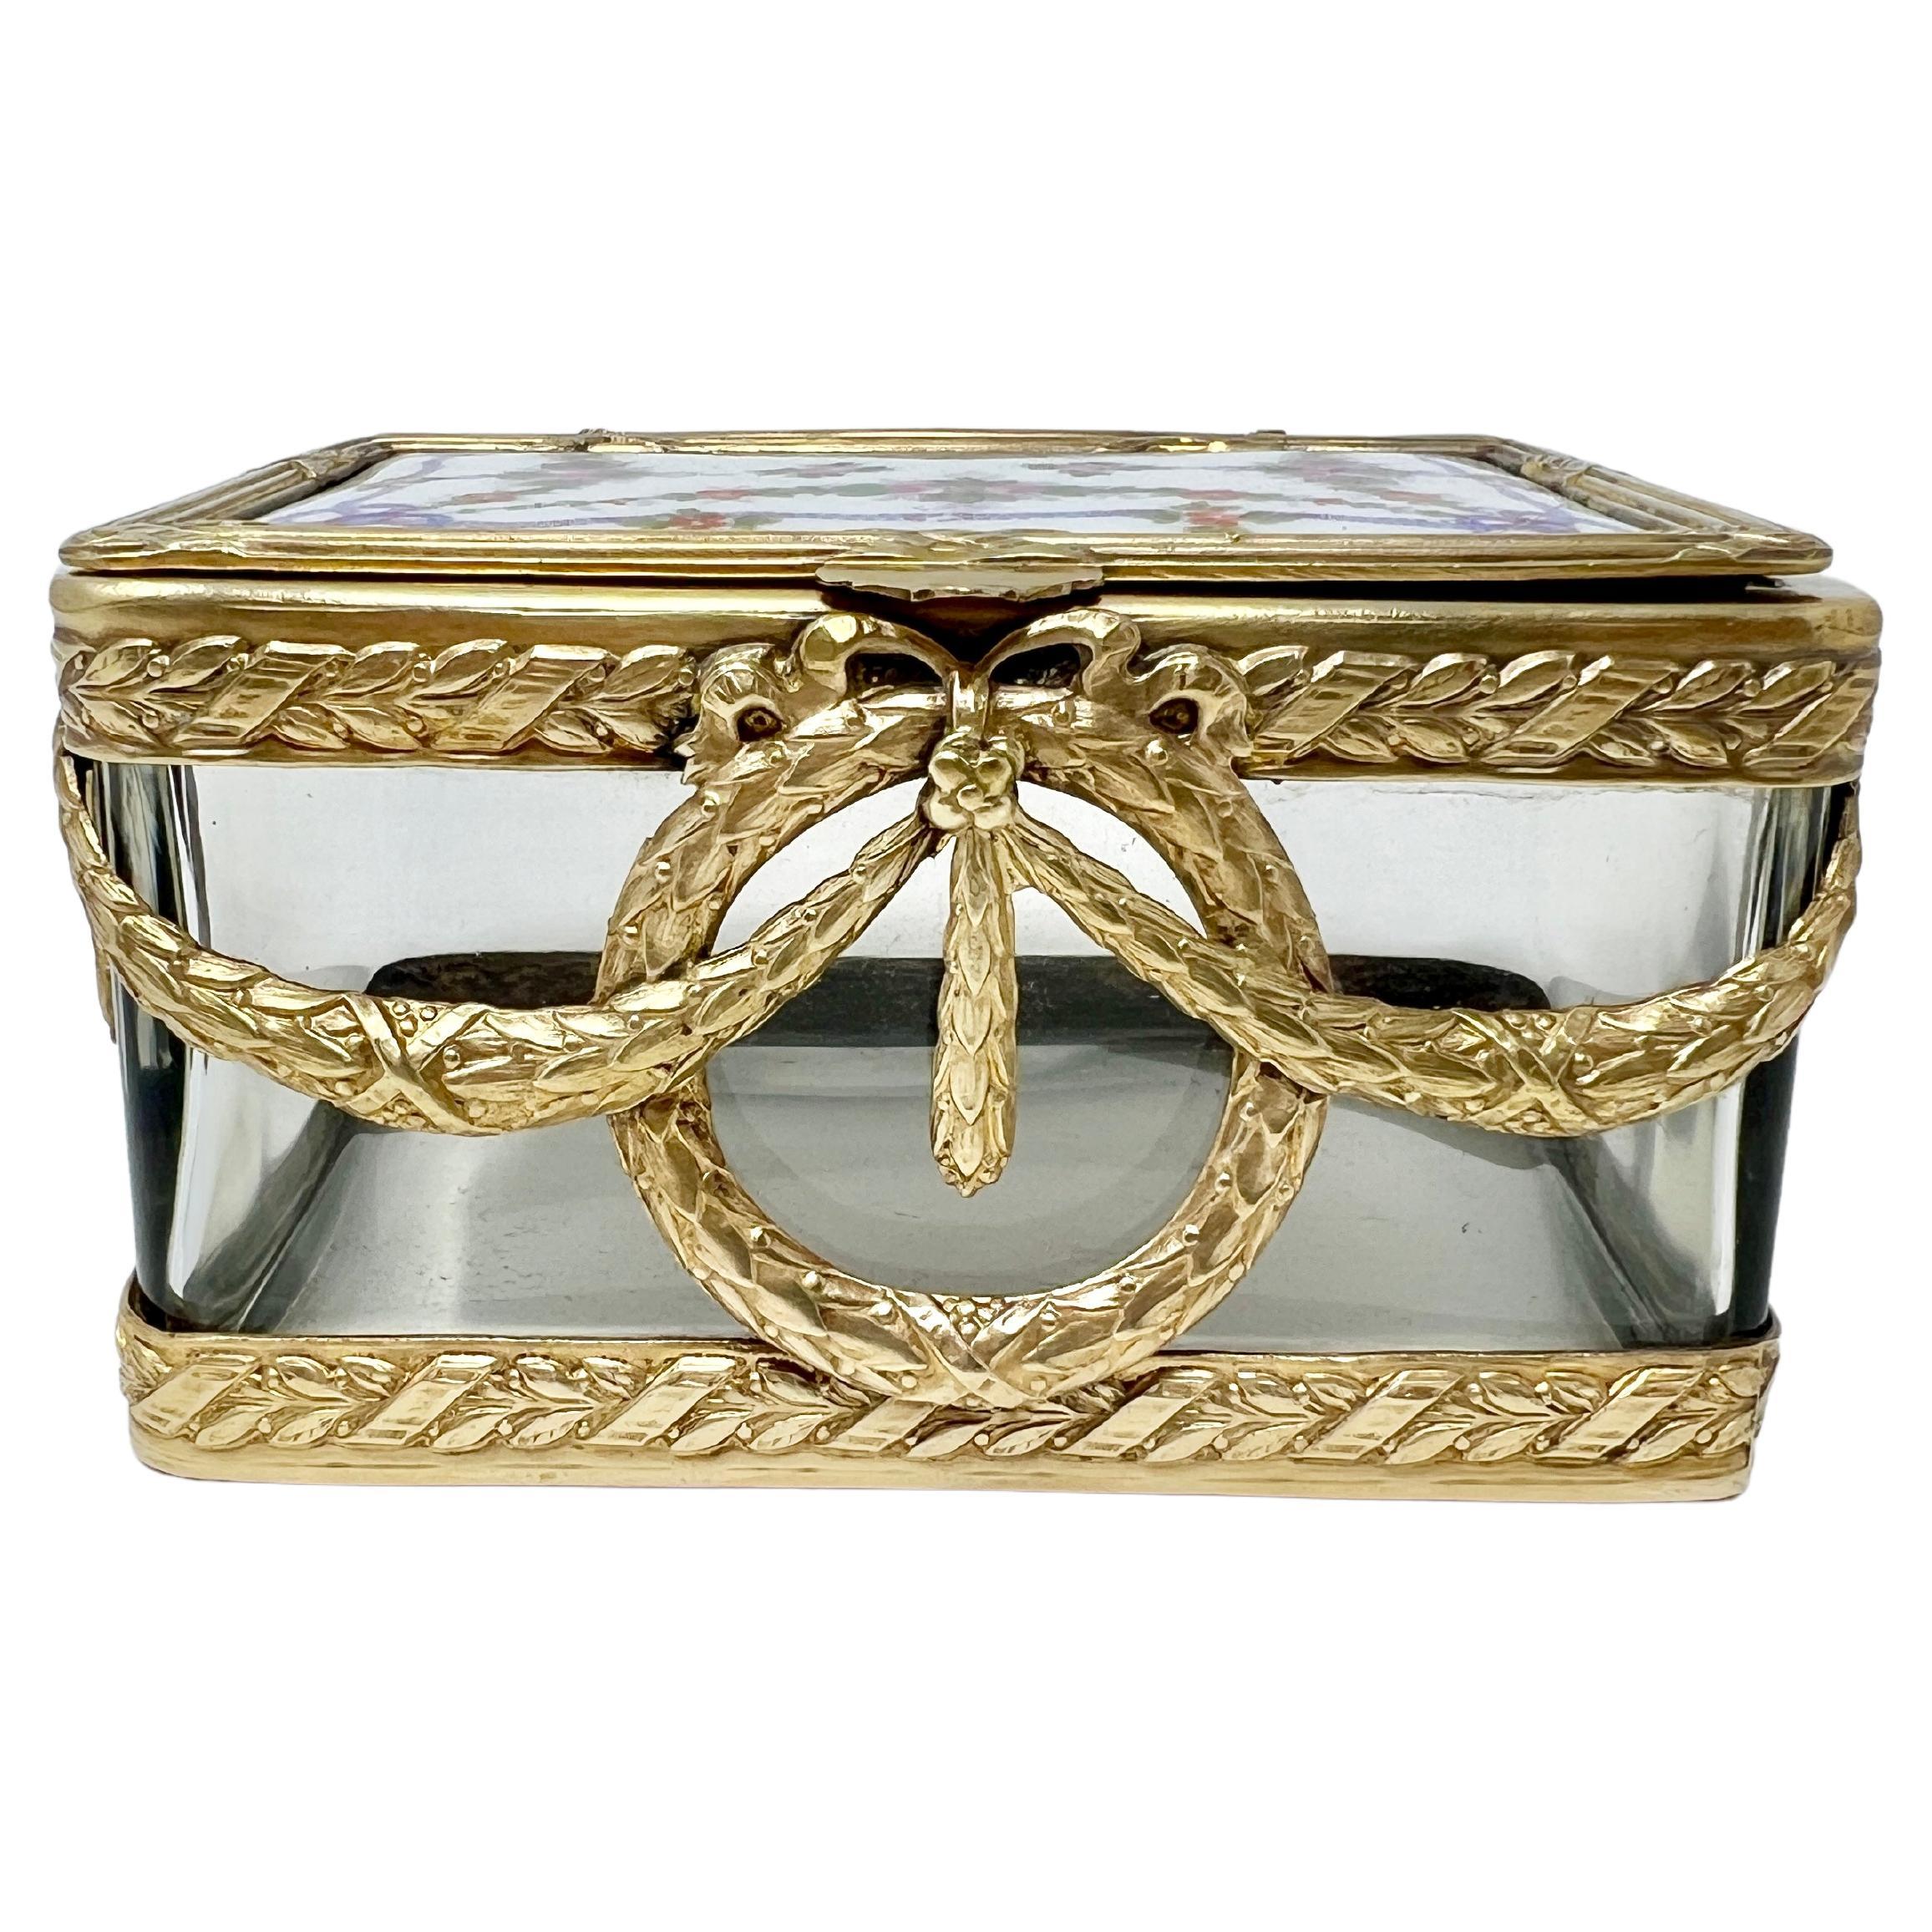 Boîte à bijoux française ancienne en or, bronze et cristal taillé émaillé, vers 1890.